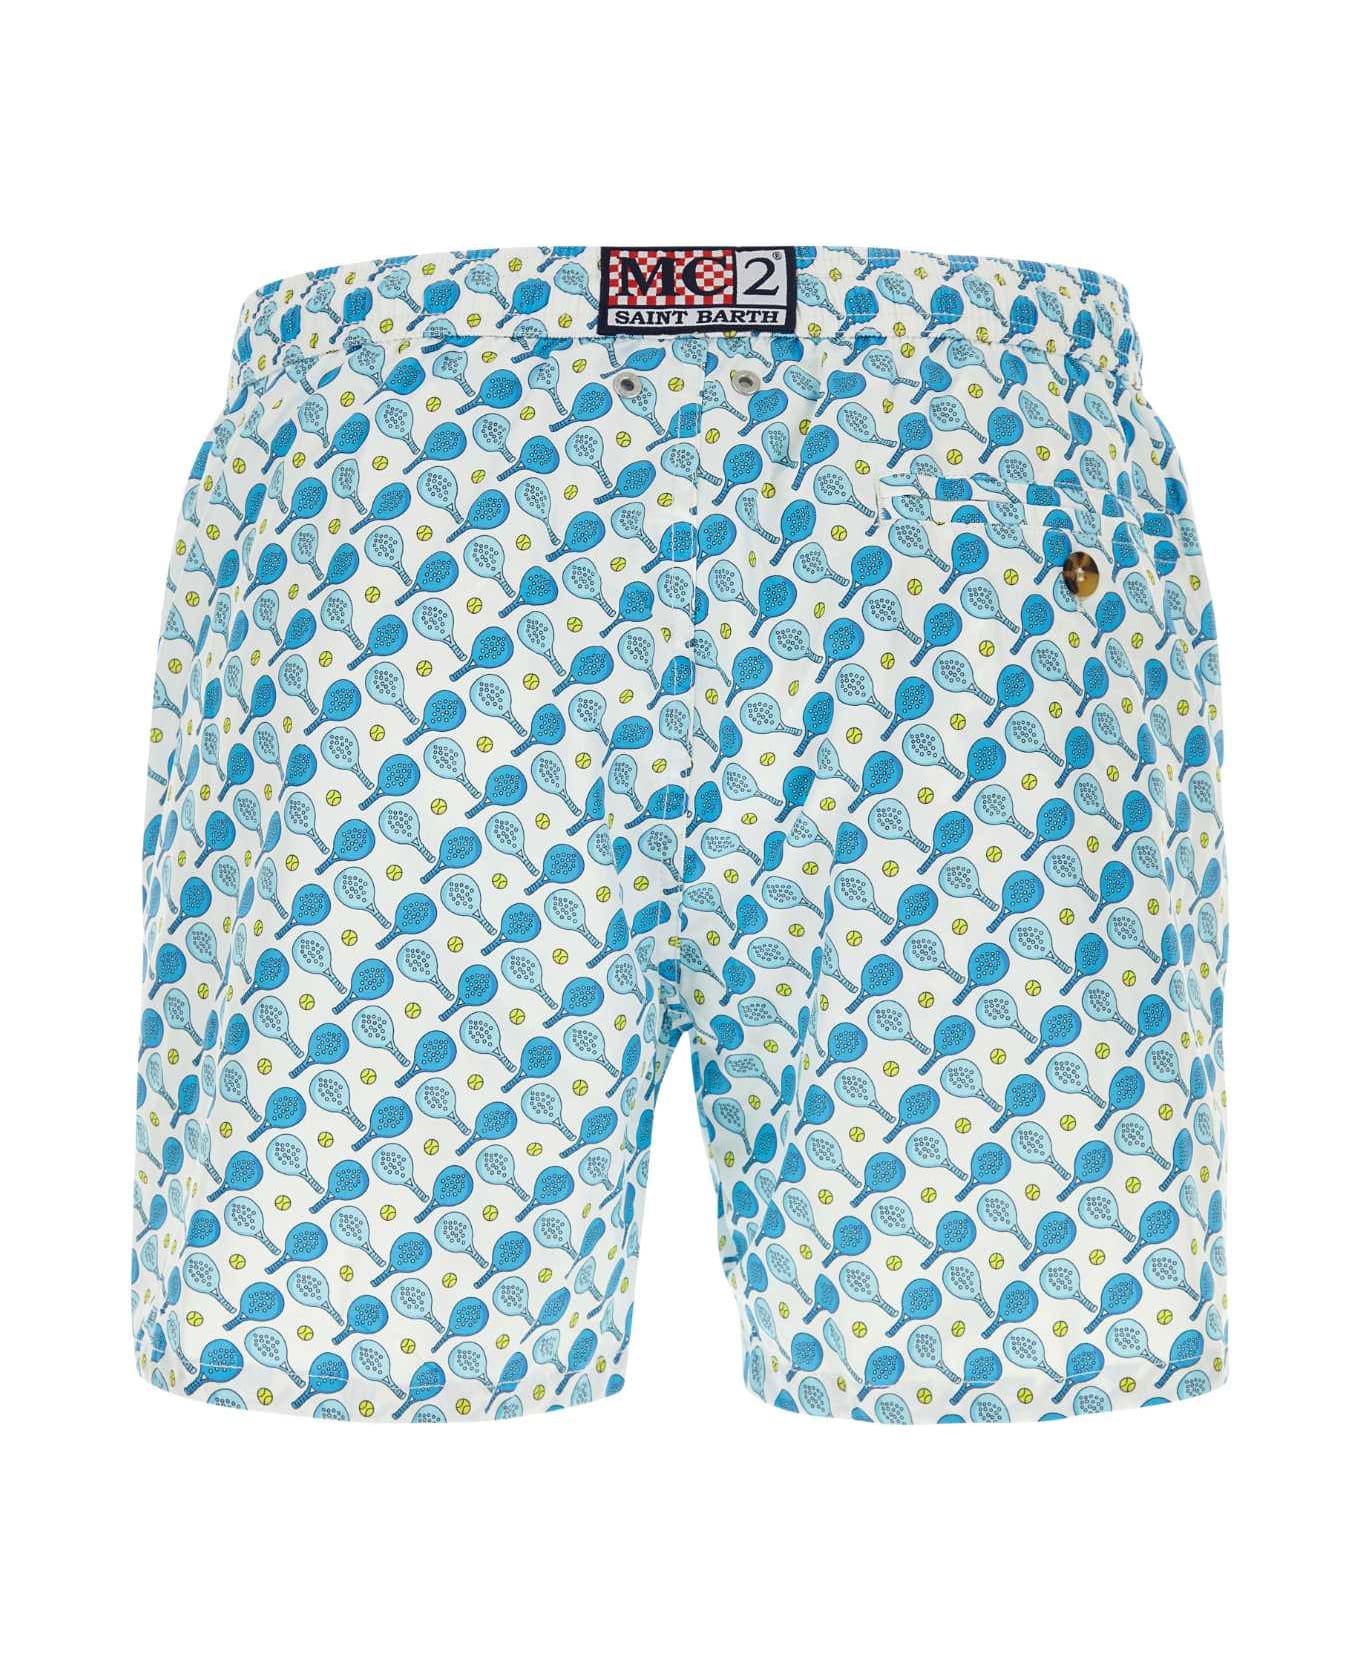 MC2 Saint Barth Printed Polyester Swimming Shorts - 01